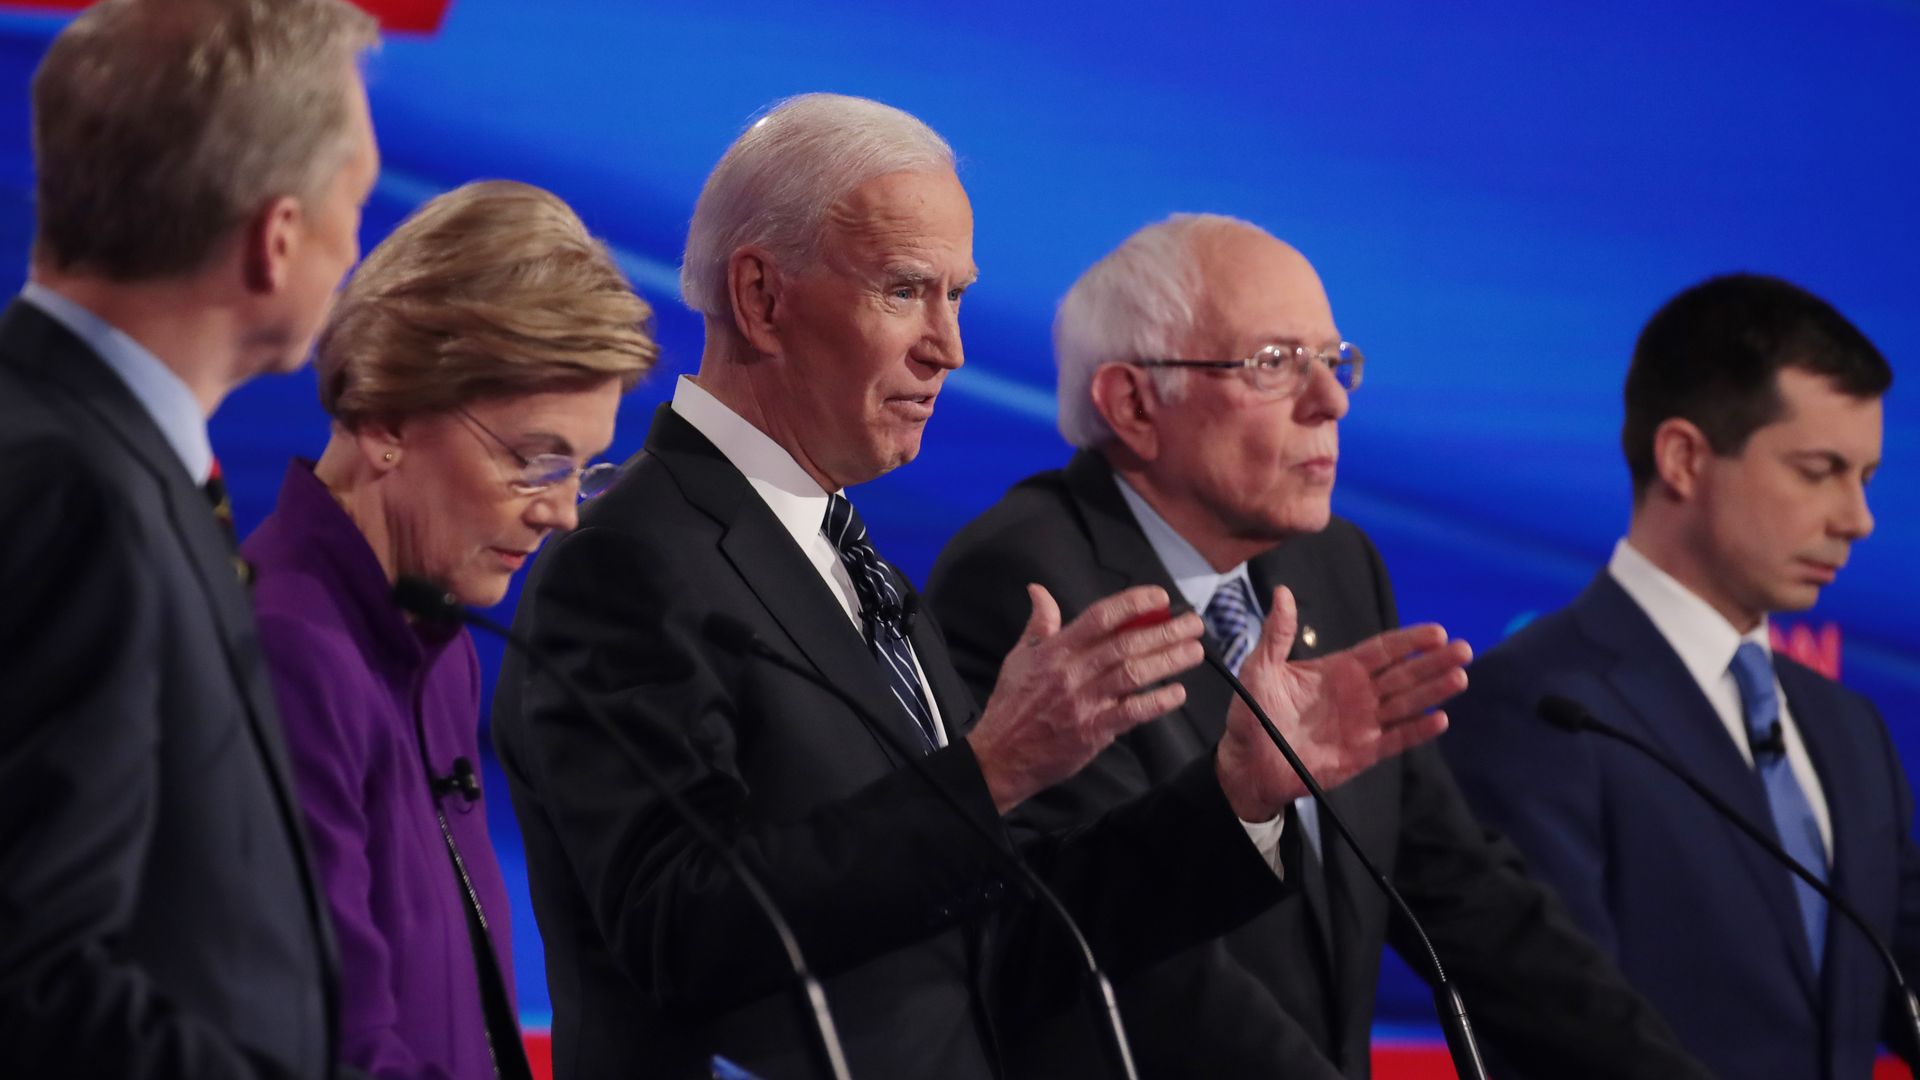 In this image, Tom Steyer, Elizabeth Warren, Joe Biden, Bernie Sanders, and Pete Buttigieg stand in a line.